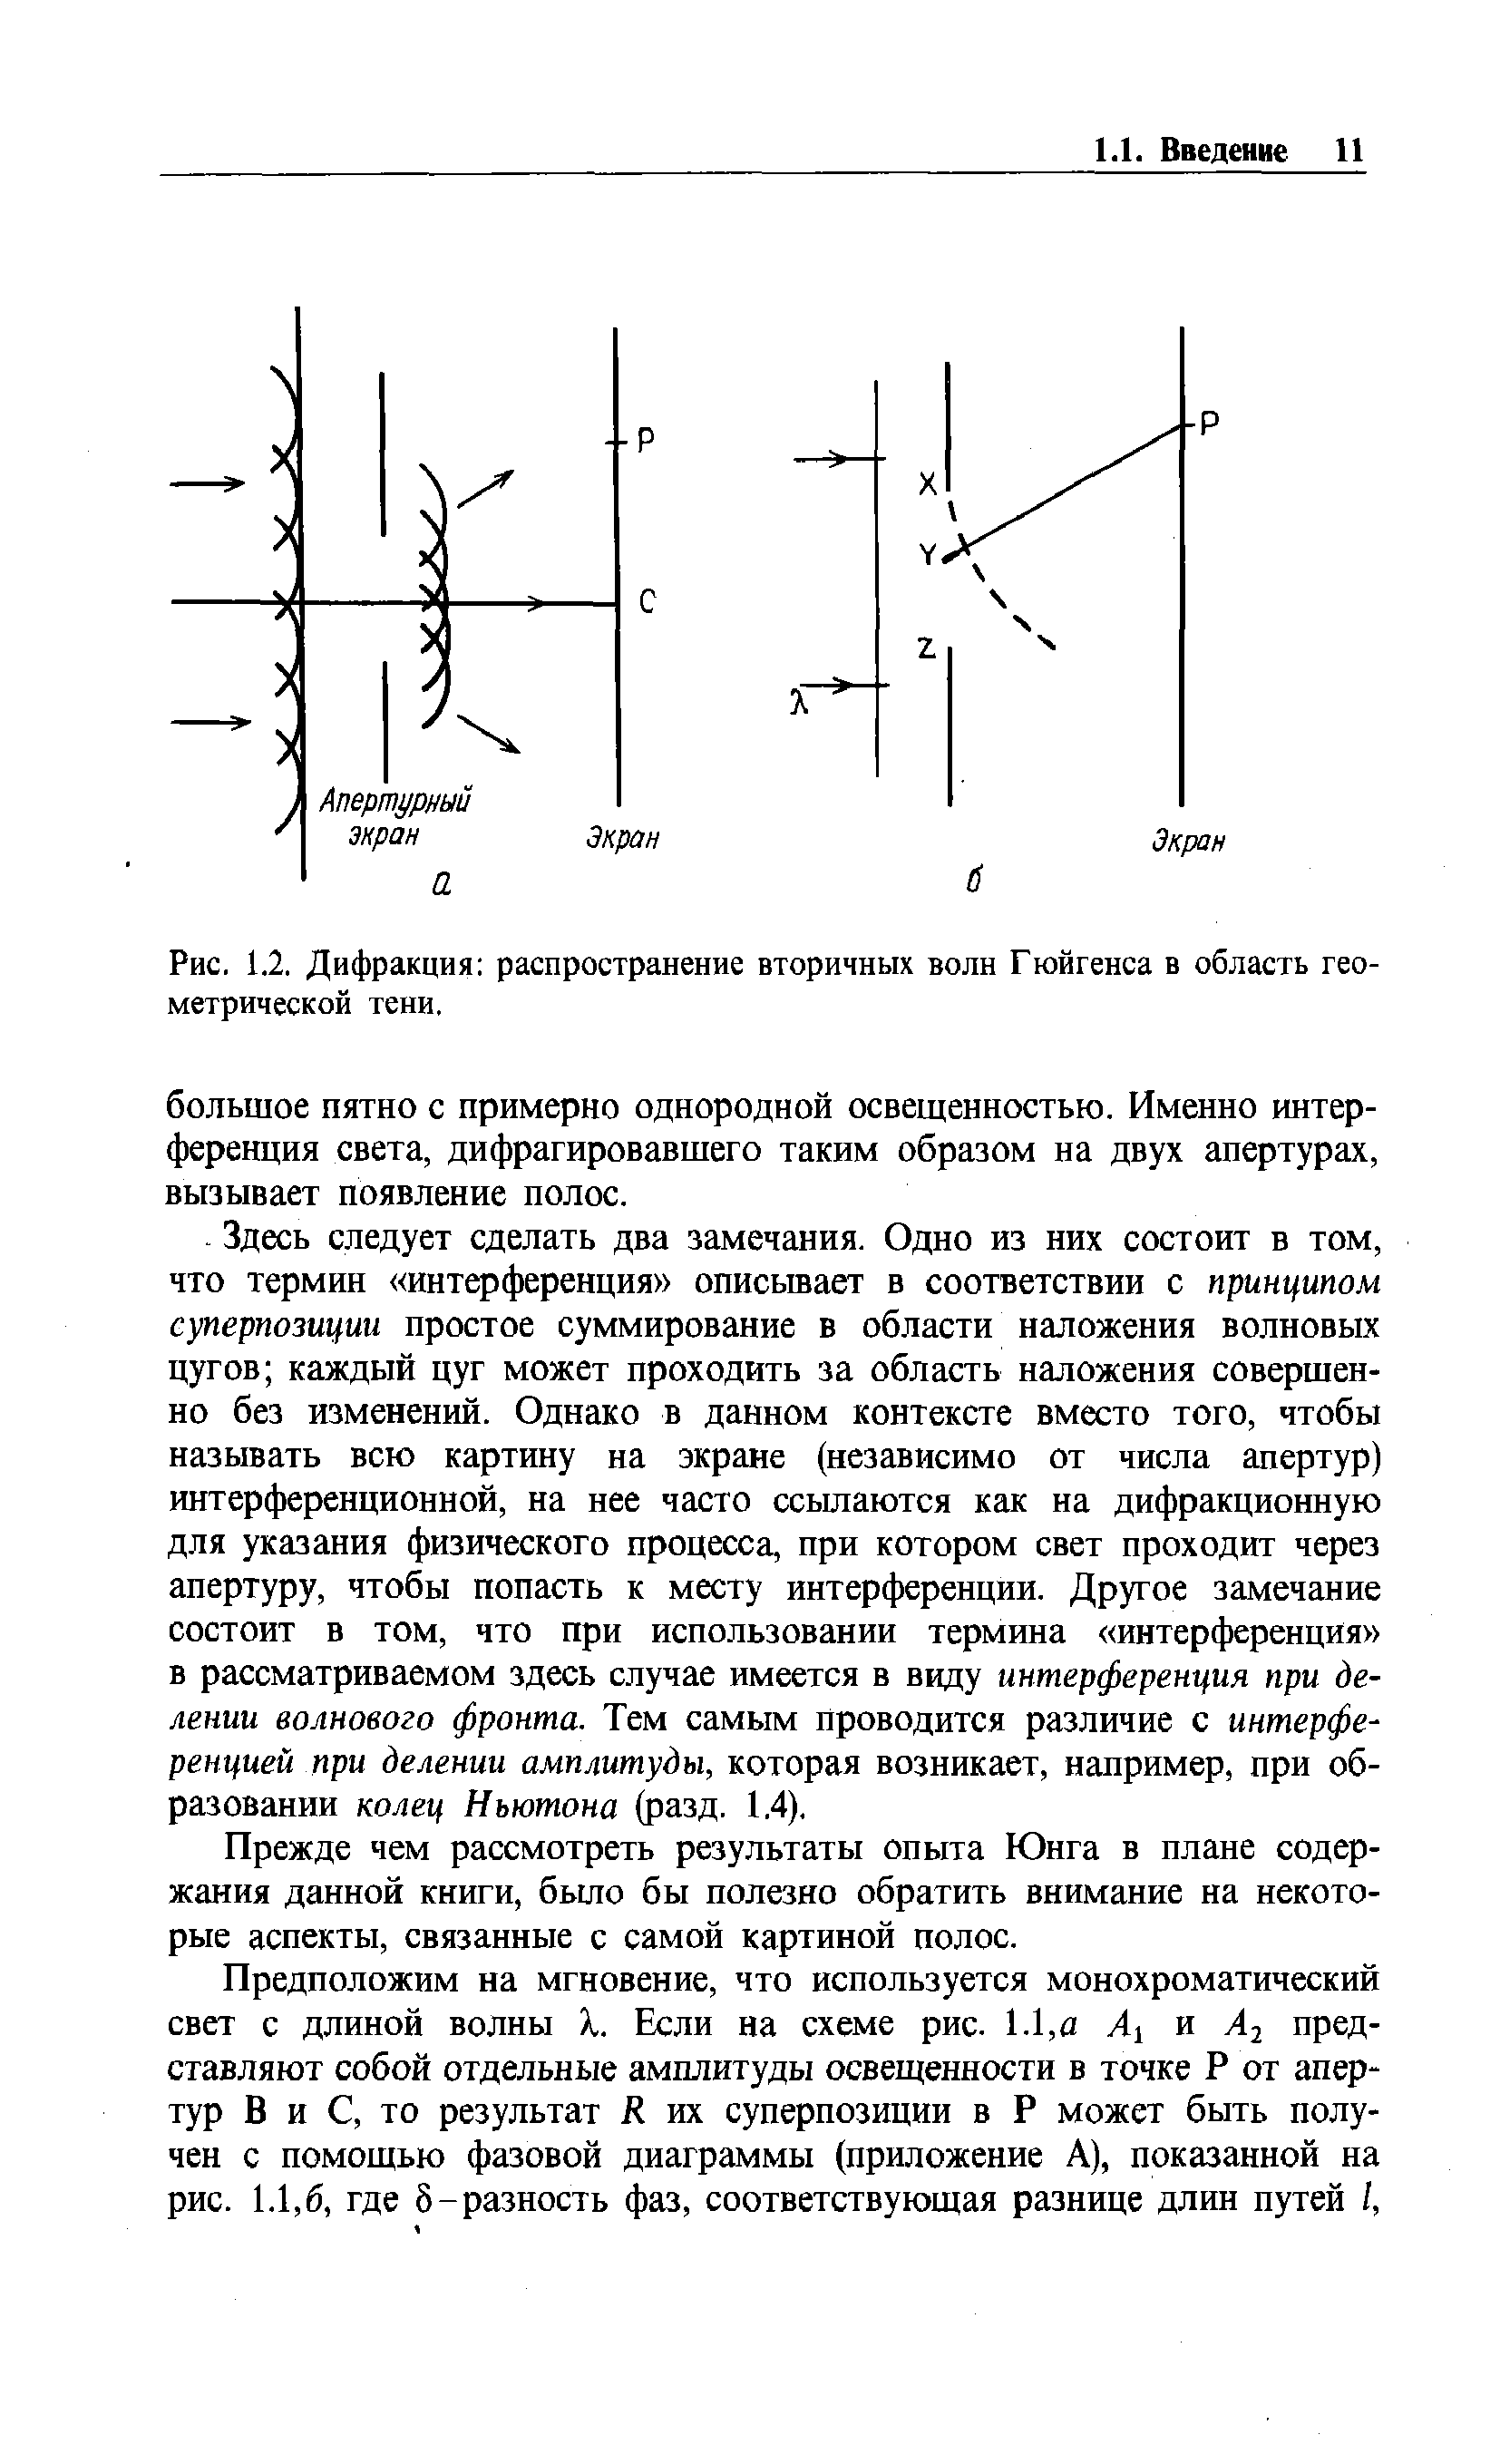 Рис. 1.2. Дифракция распространение вторичных волн Гюйгенса в область геометрической тени.
